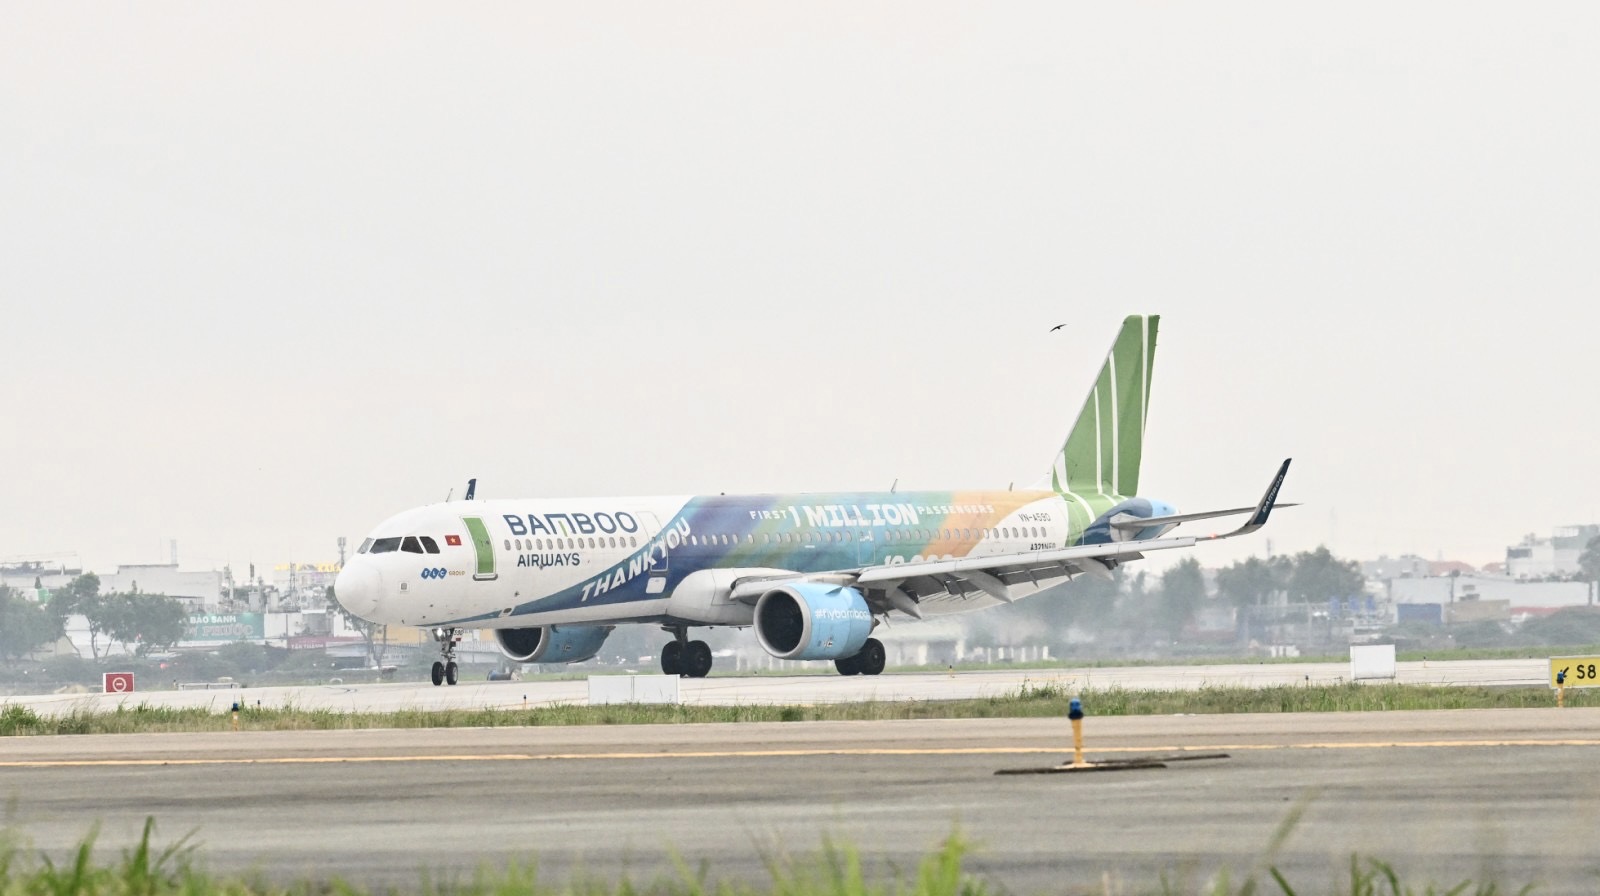 Bamboo Airways khai thác đường bay thường lệ kết nối Hà Nội và TPHCM tới Singapore từ cuối tháng 4, đầu tháng 5